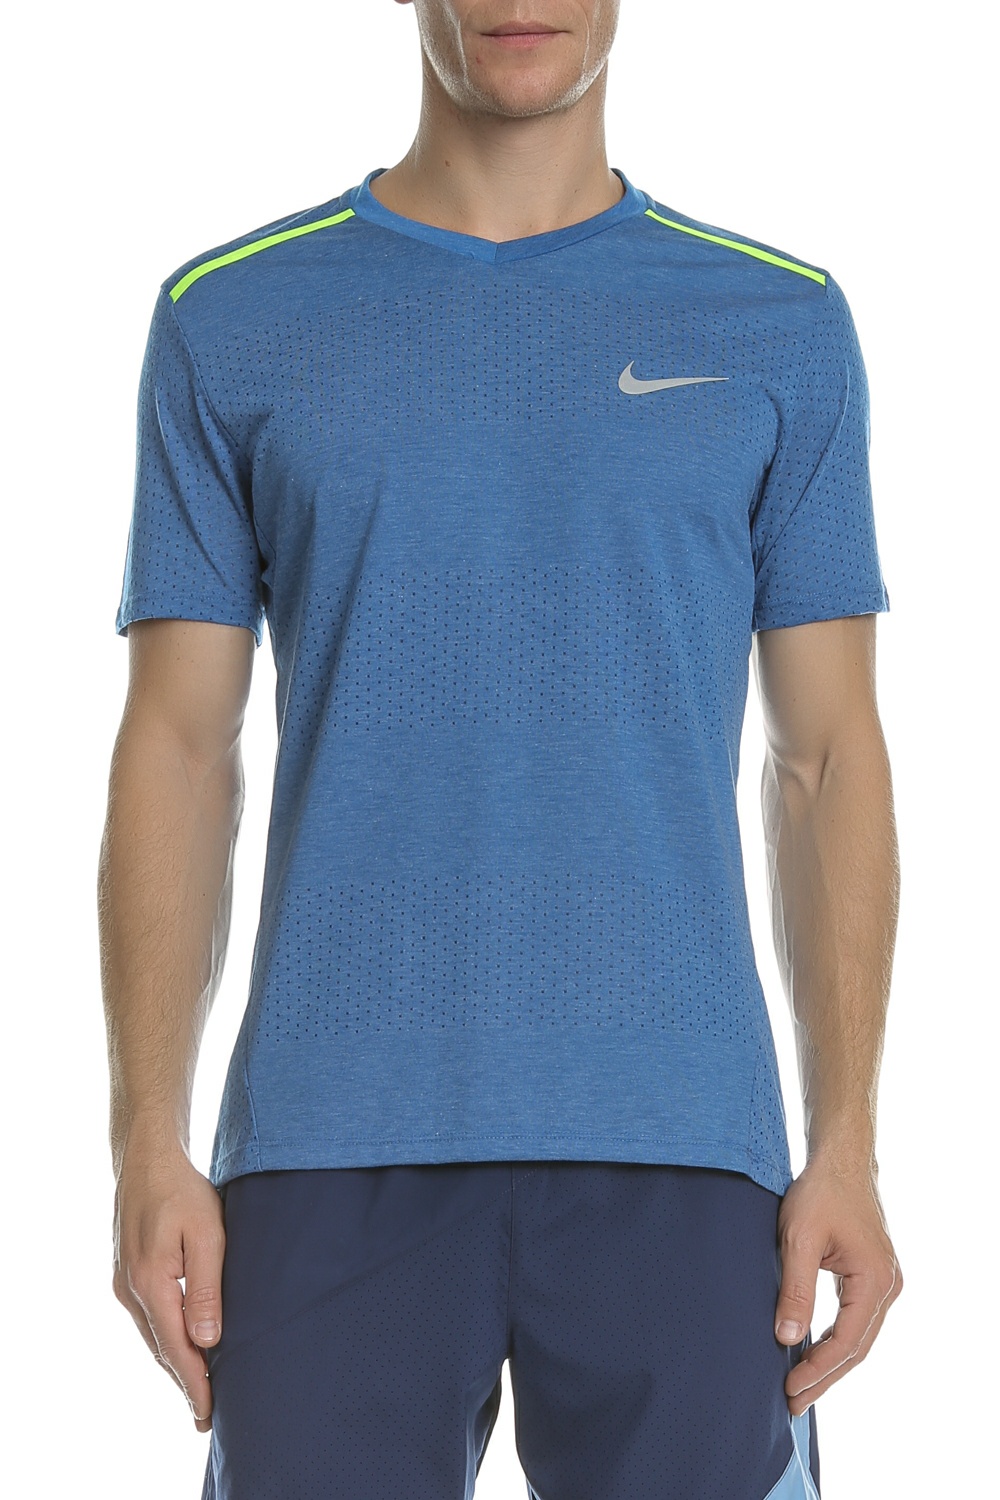 Ανδρικά/Ρούχα/Αθλητικά/T-shirt NIKE - Κοντομάνικη μπλούζα NIKE TAILWIND μπλε